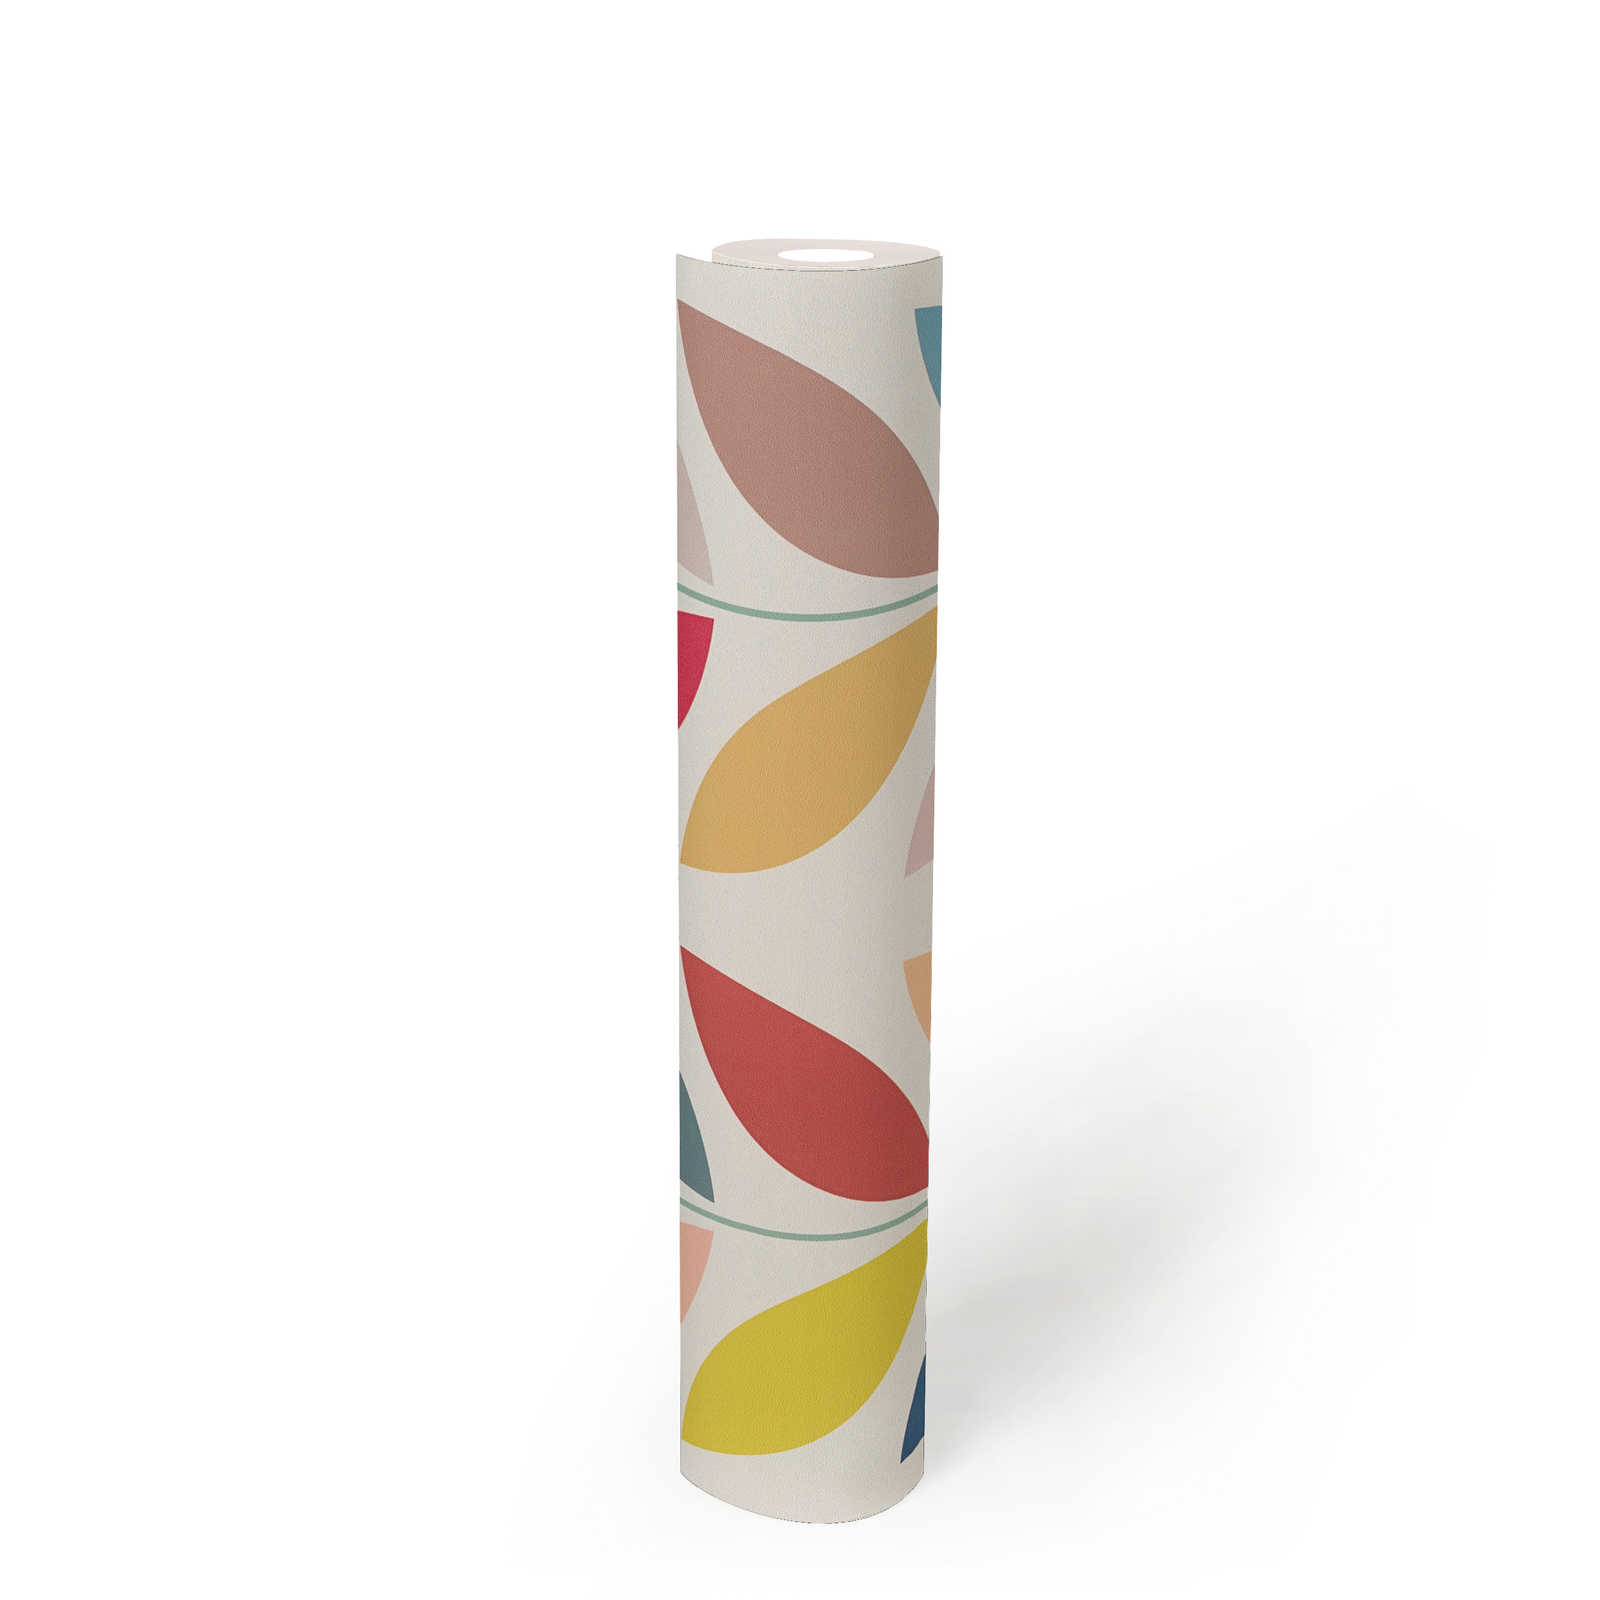             Retro non-woven wallpaper with striking colourful leaf pattern - cream, multicoloured
        